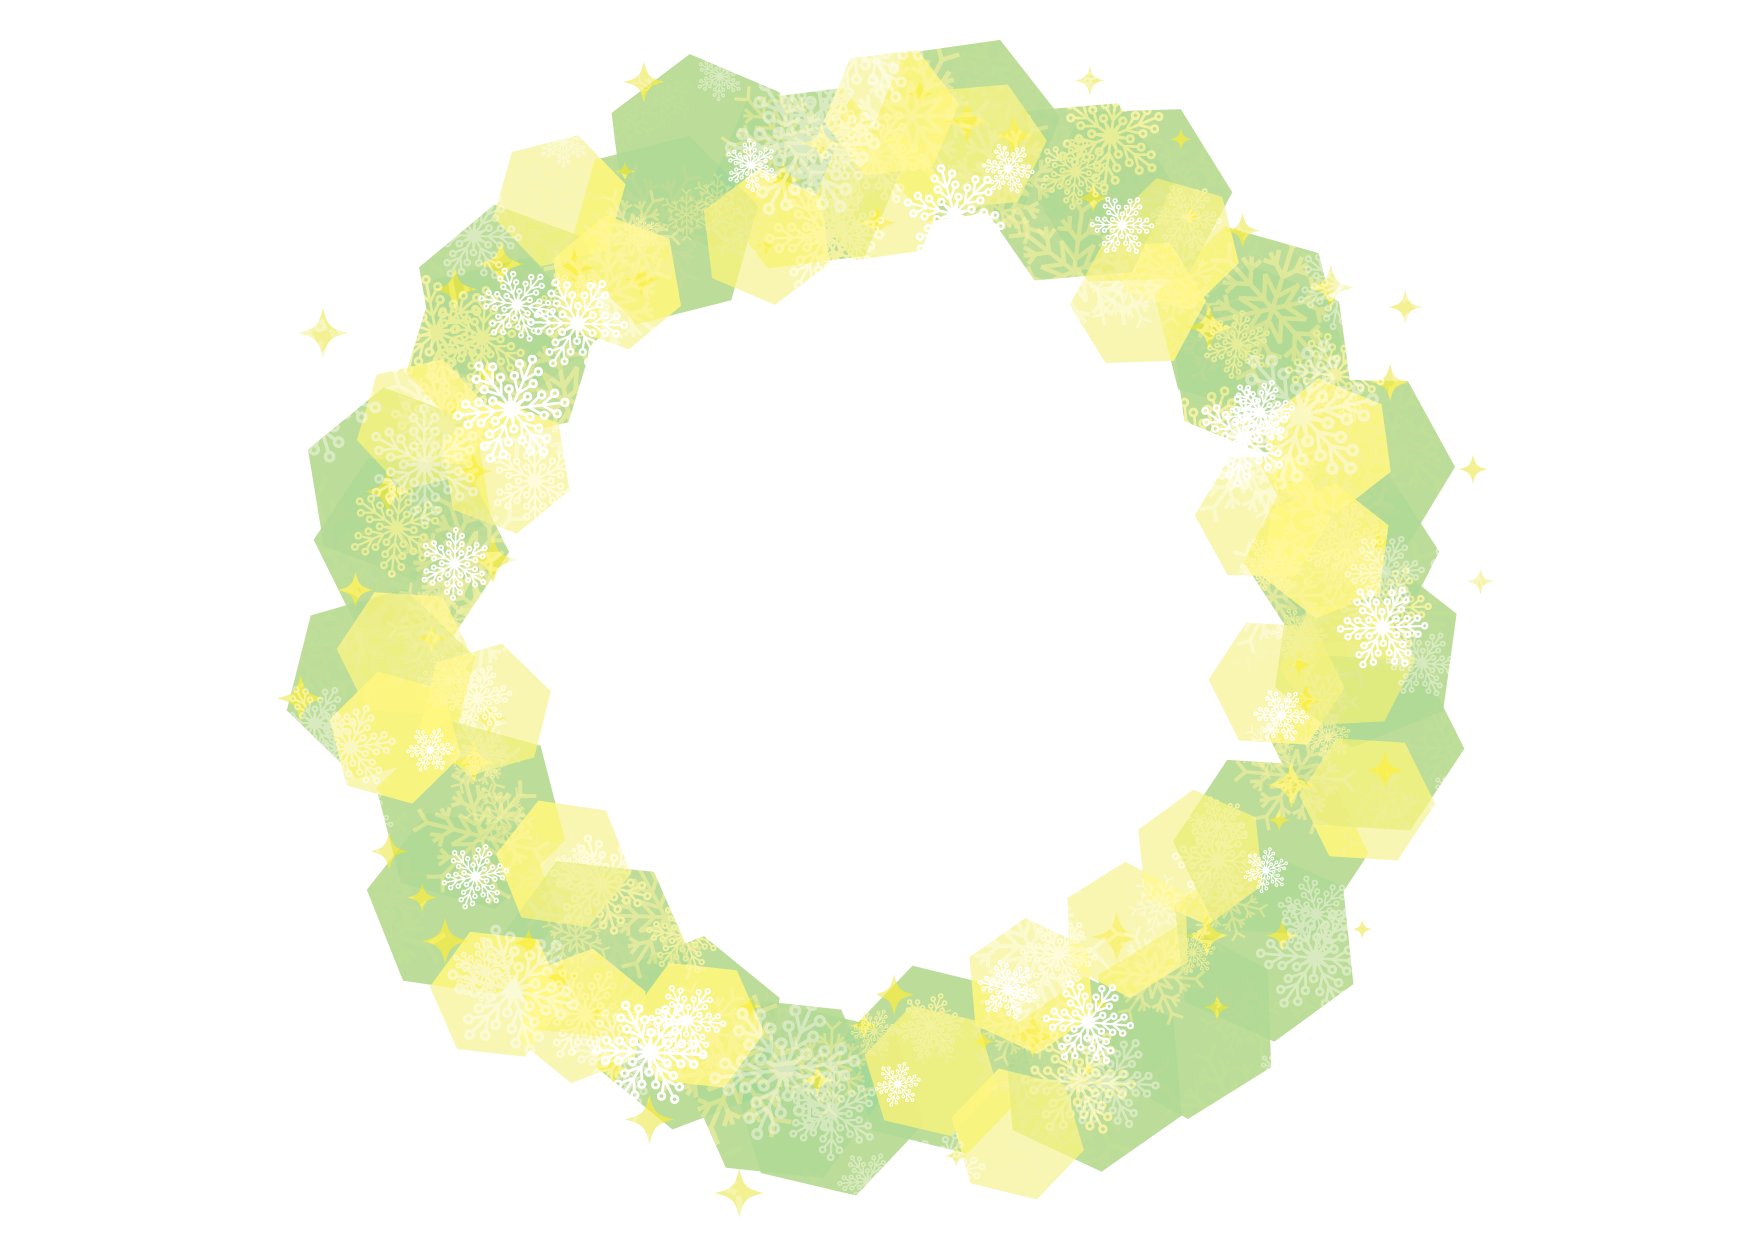 可愛いイラスト無料 雪の結晶 フレーム 背景 緑色 Free Illustration Snowflakes Frame Background Green 公式 イラストダウンロード